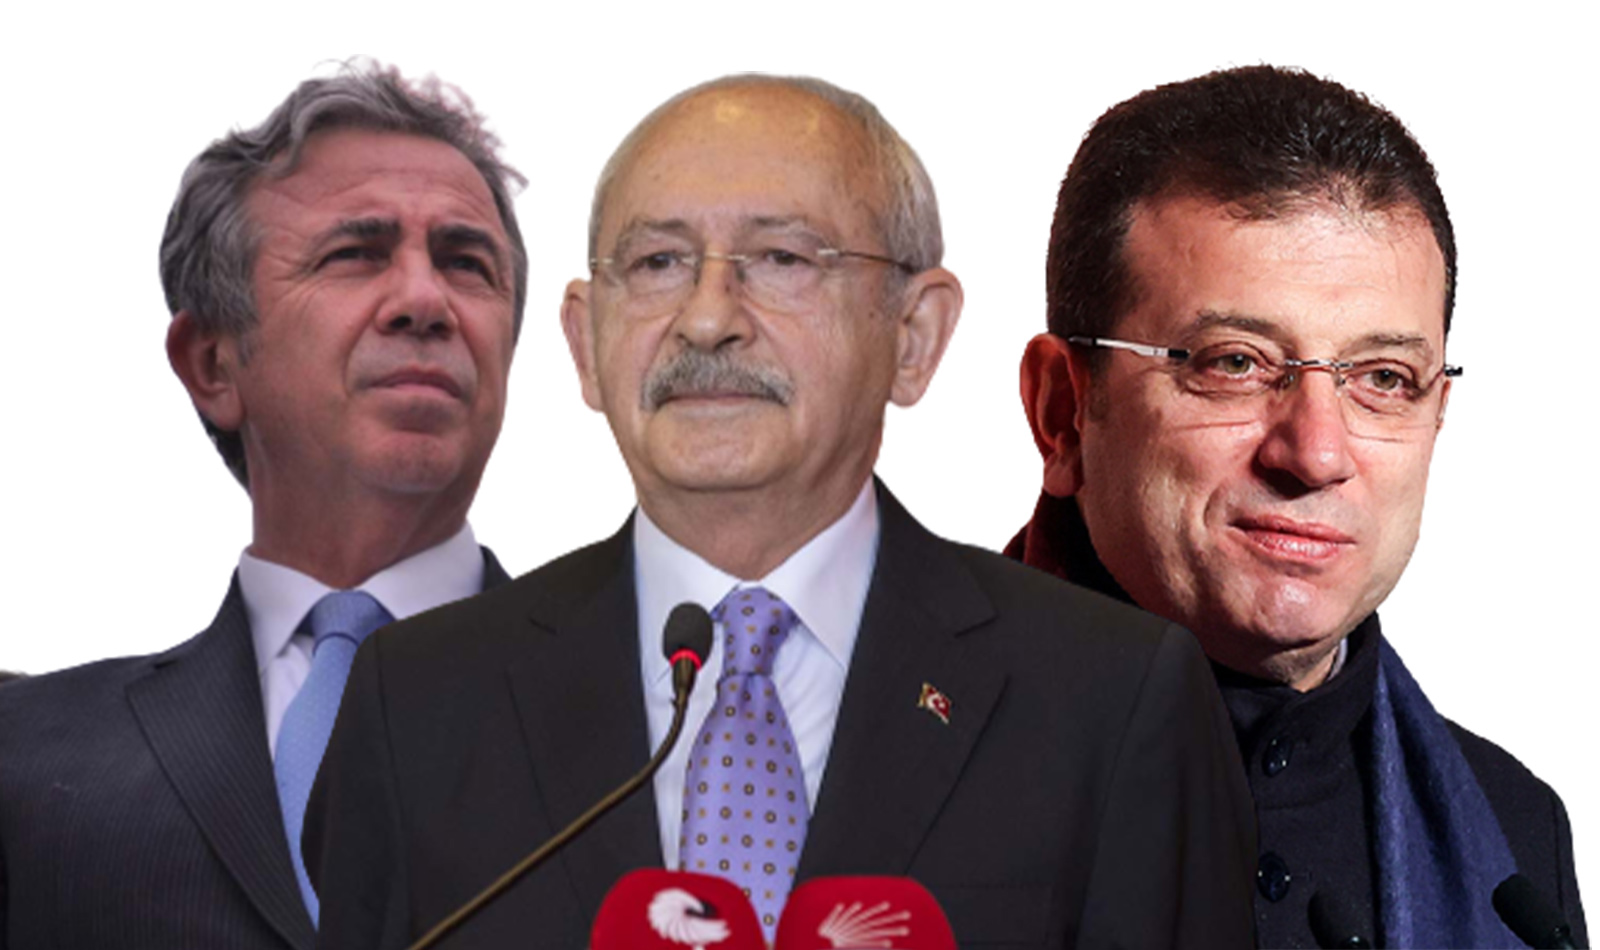 Muhalefette cumhurbaşkanı adayı karmaşası! Ahmet Hakan'dan dikkat çeken yorum: Ekremciler, Kemalciler, Mansurcular diye gruplaşmalar olacak 